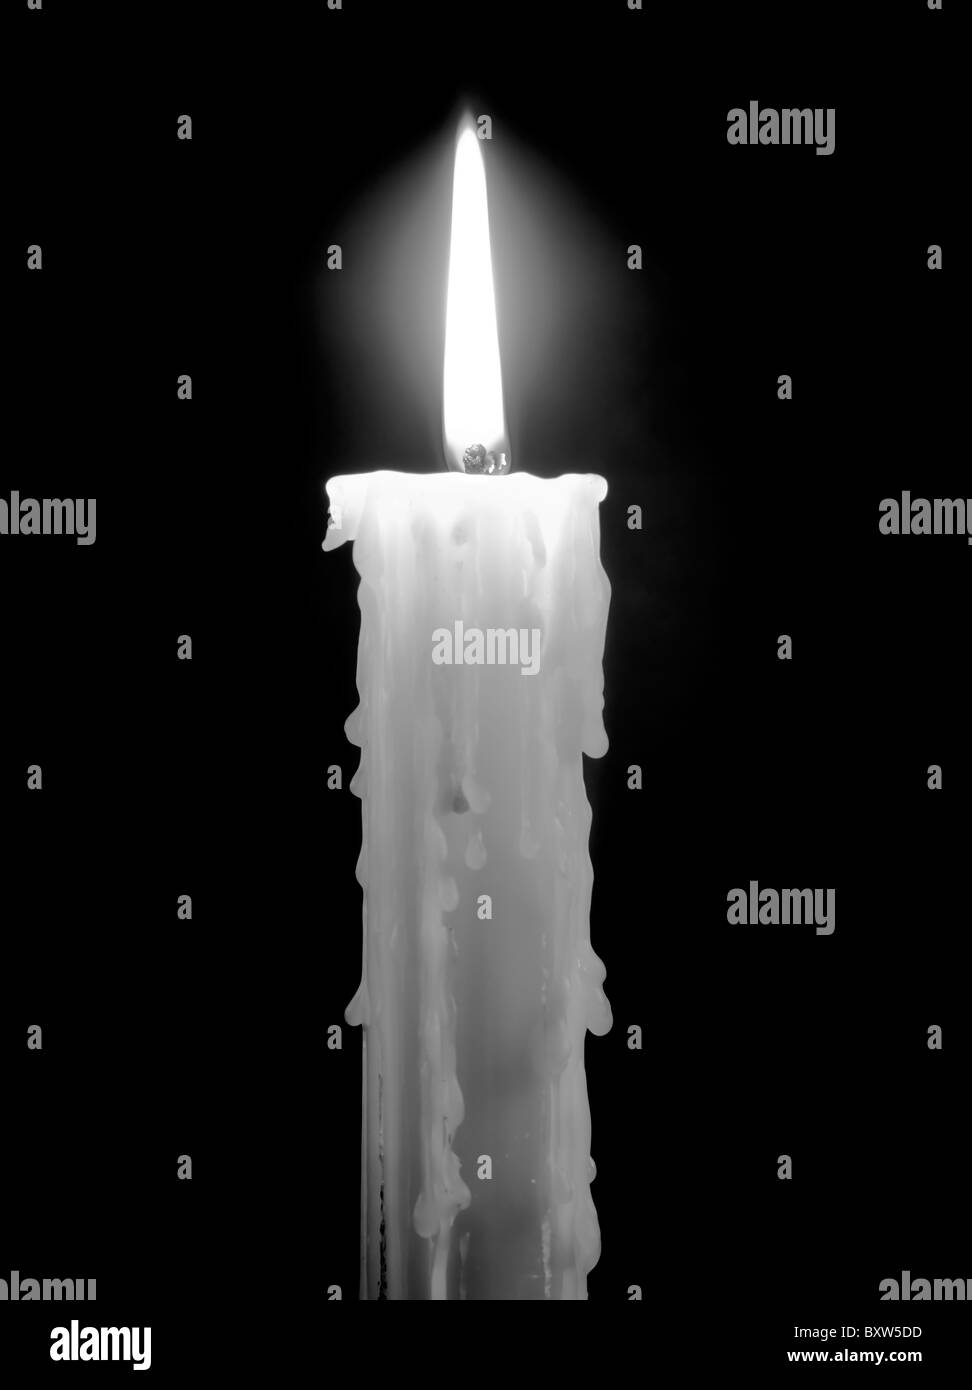 Burning candle isolated on black background Stock Photo